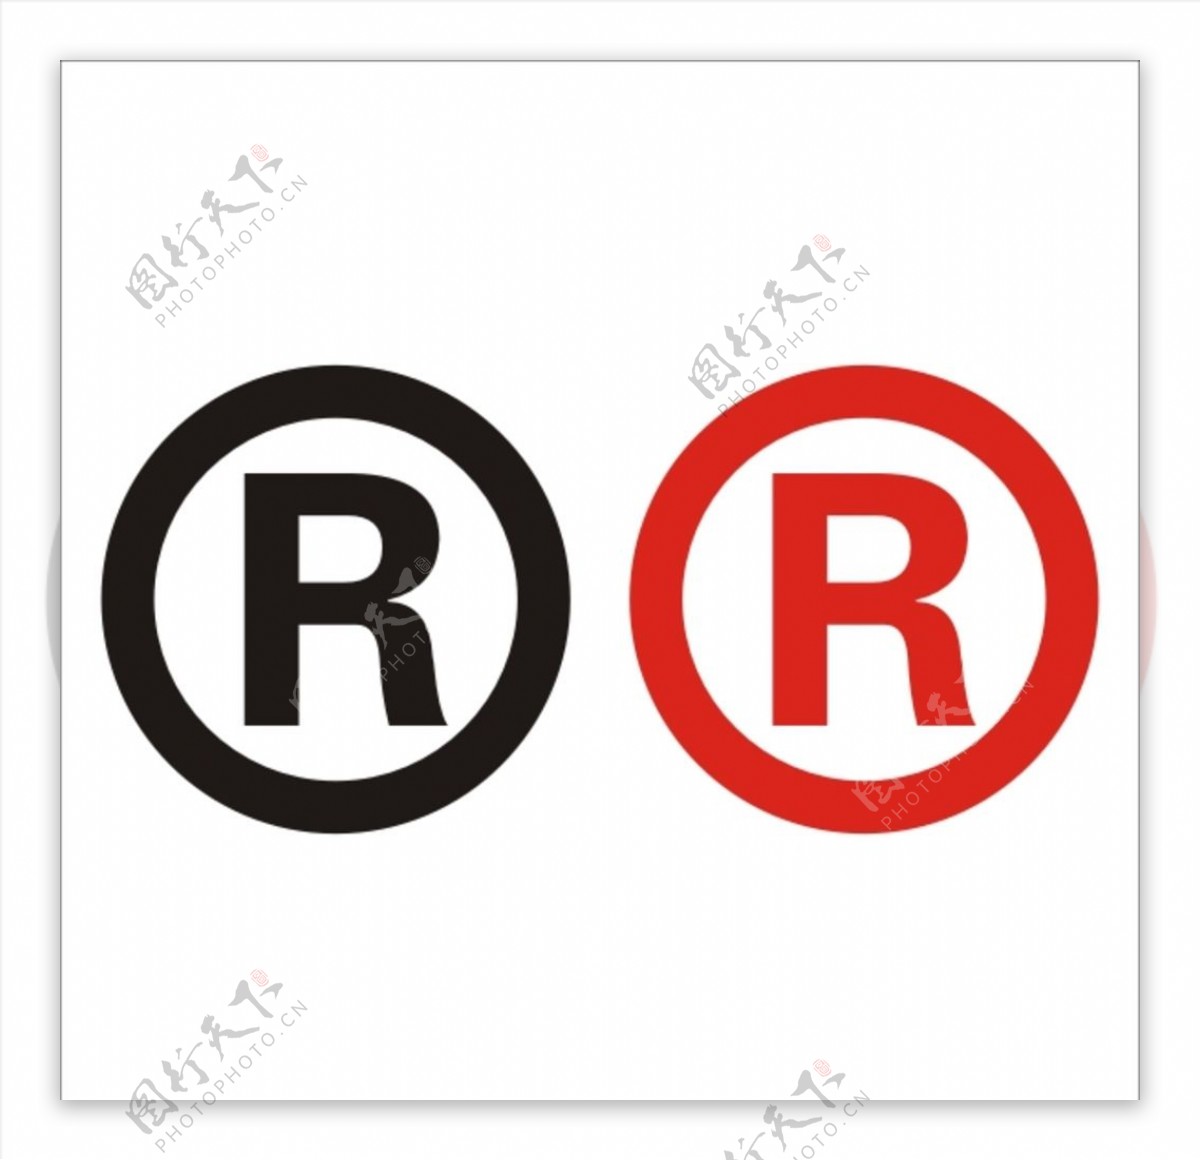 R商标标志